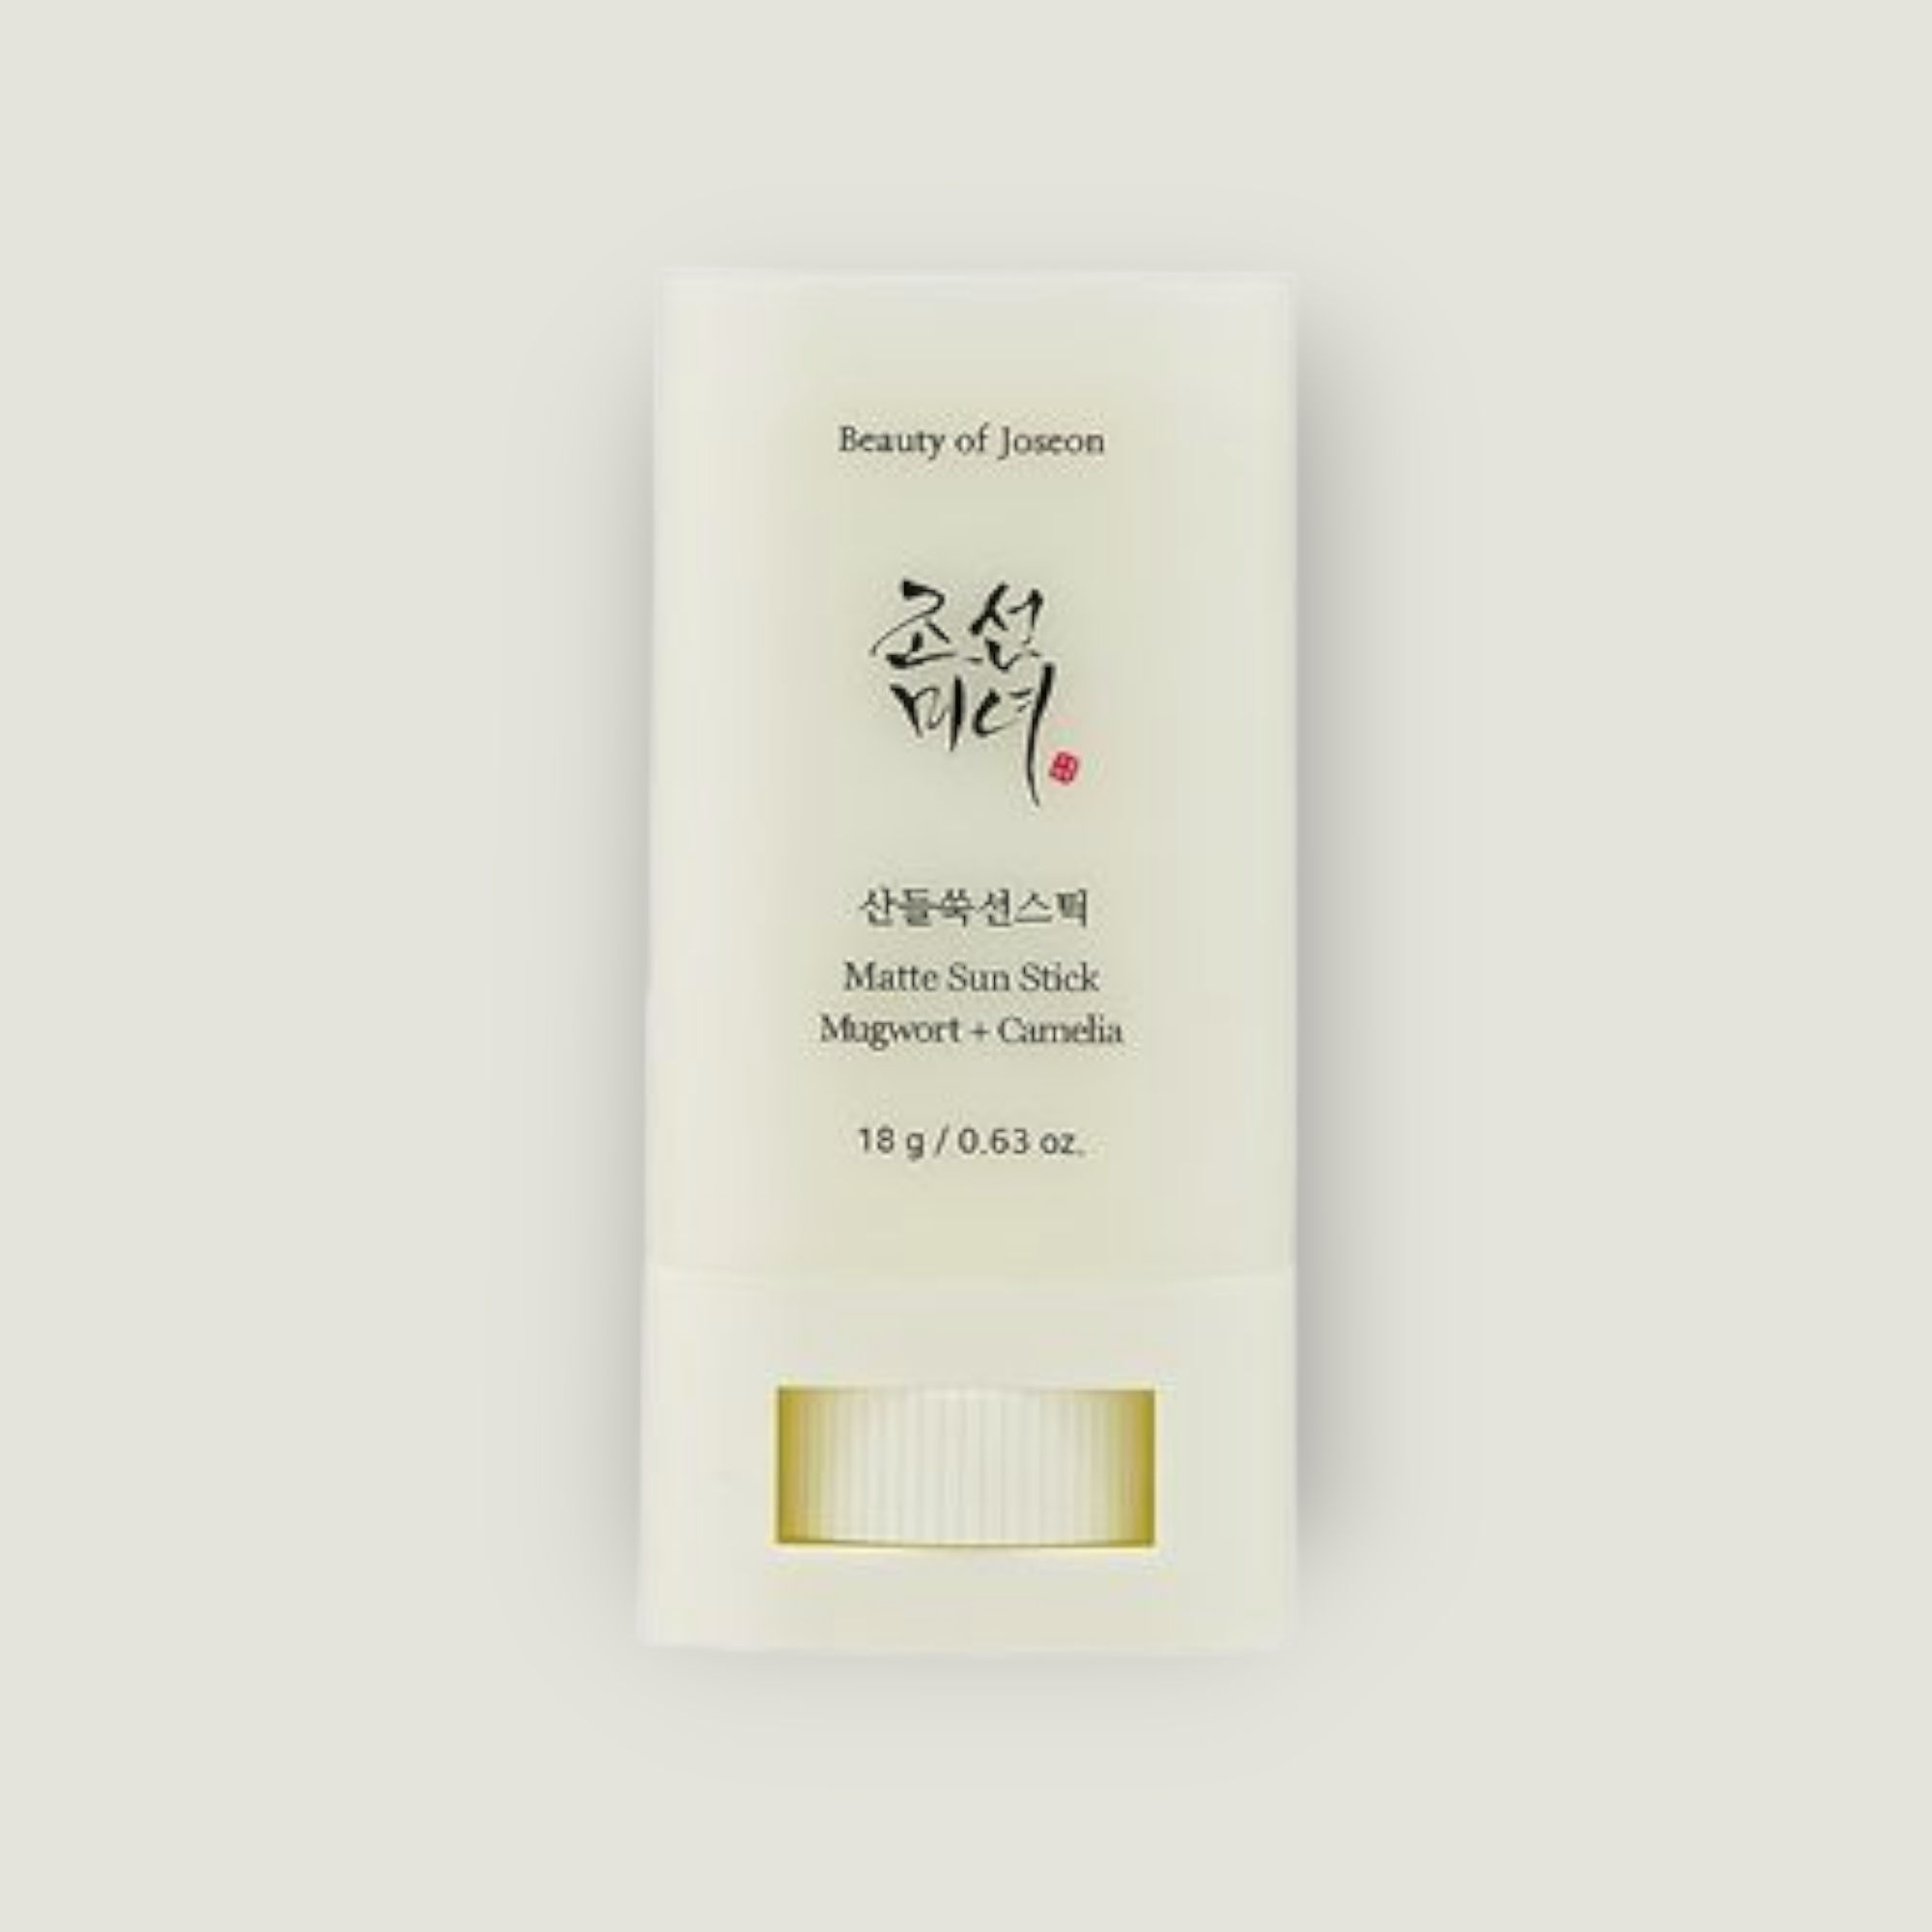 Beauty Of Joseon, Matte Sun Stick Mugwort & Camelia SPF 50 PA++++, 18g